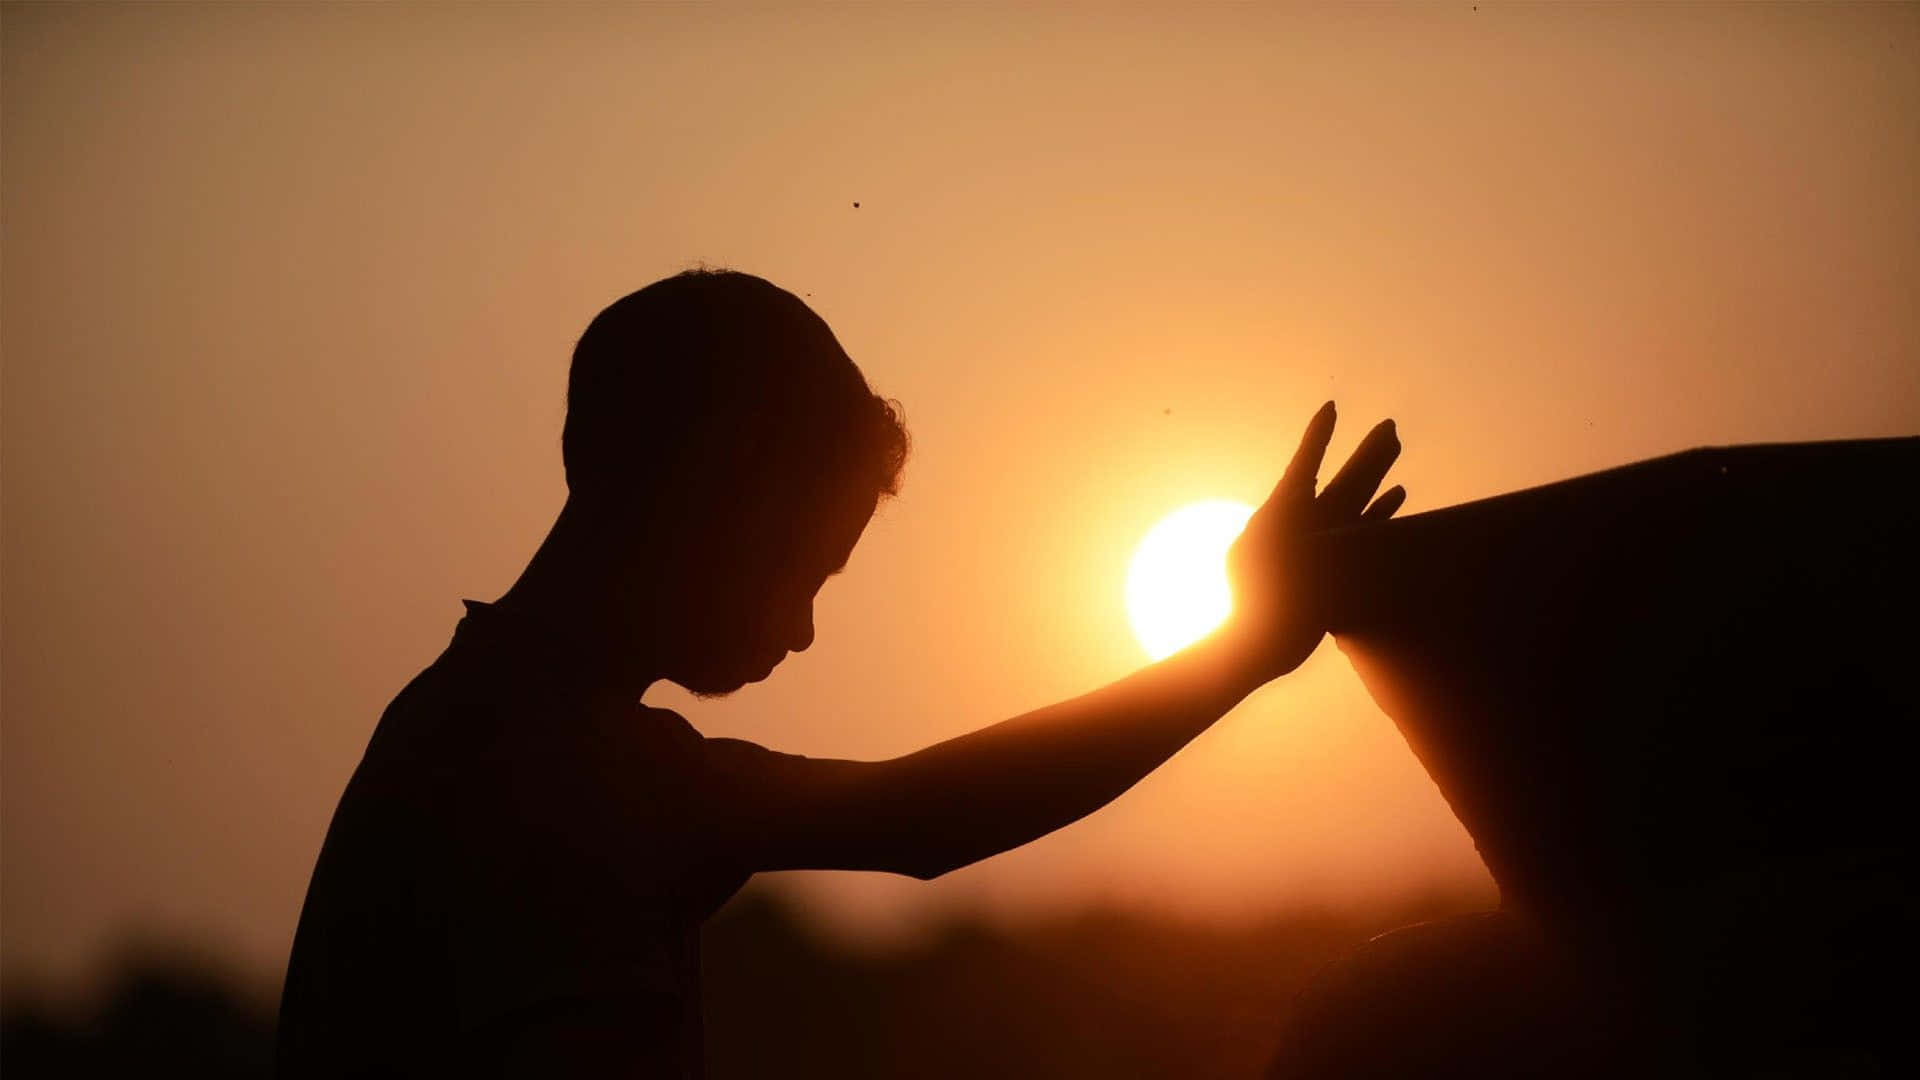 children praying hands background